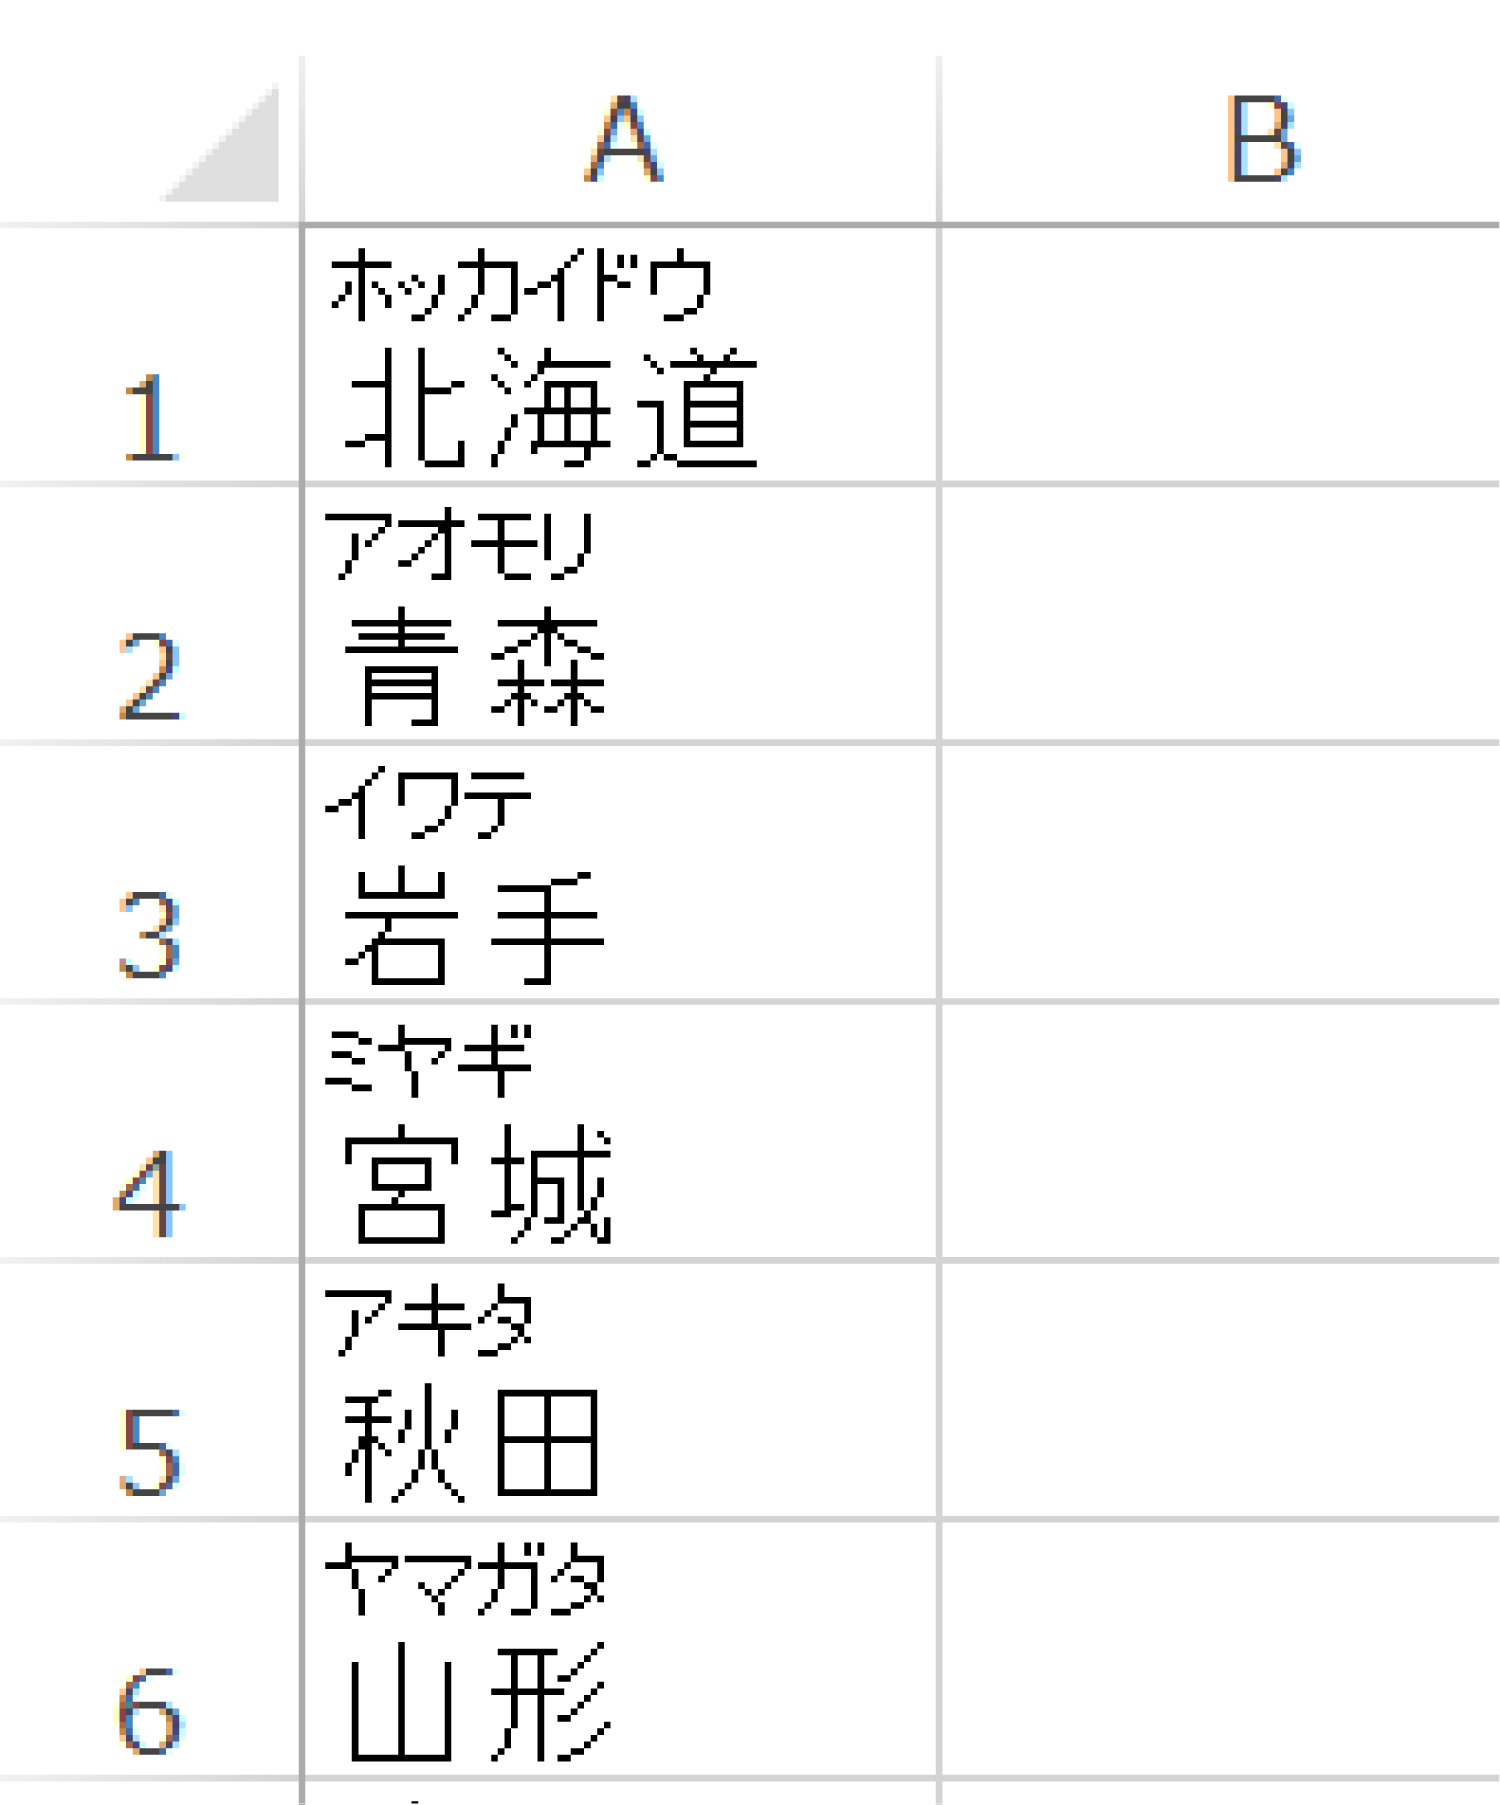 Excelで漢字にフリガナを表示する2